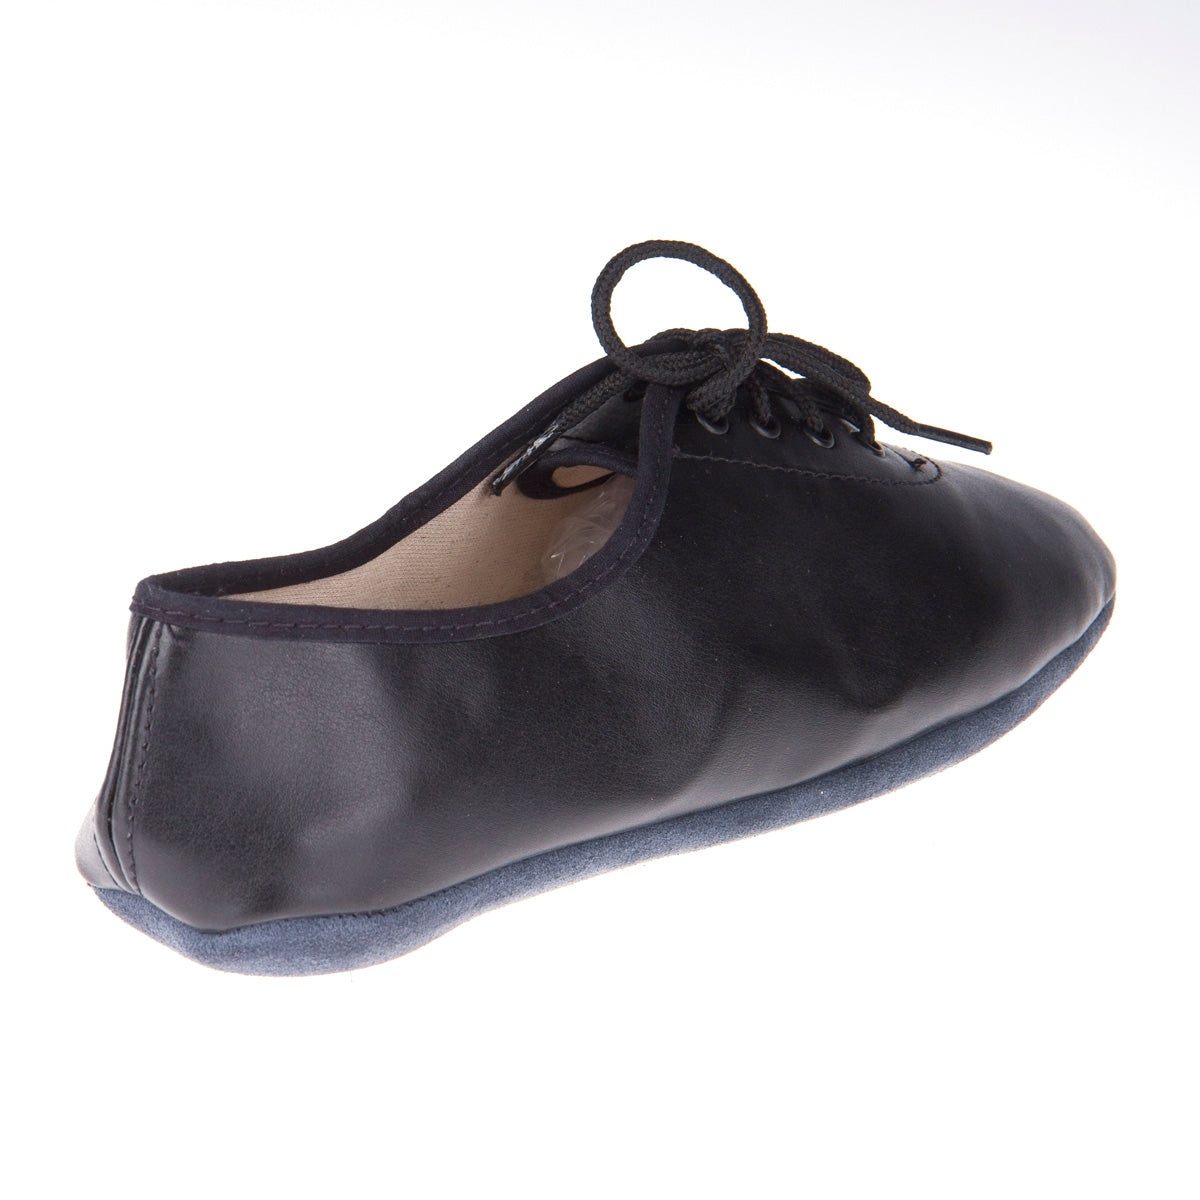 Chaussures de gymnastique légères Daedo, ZA2524